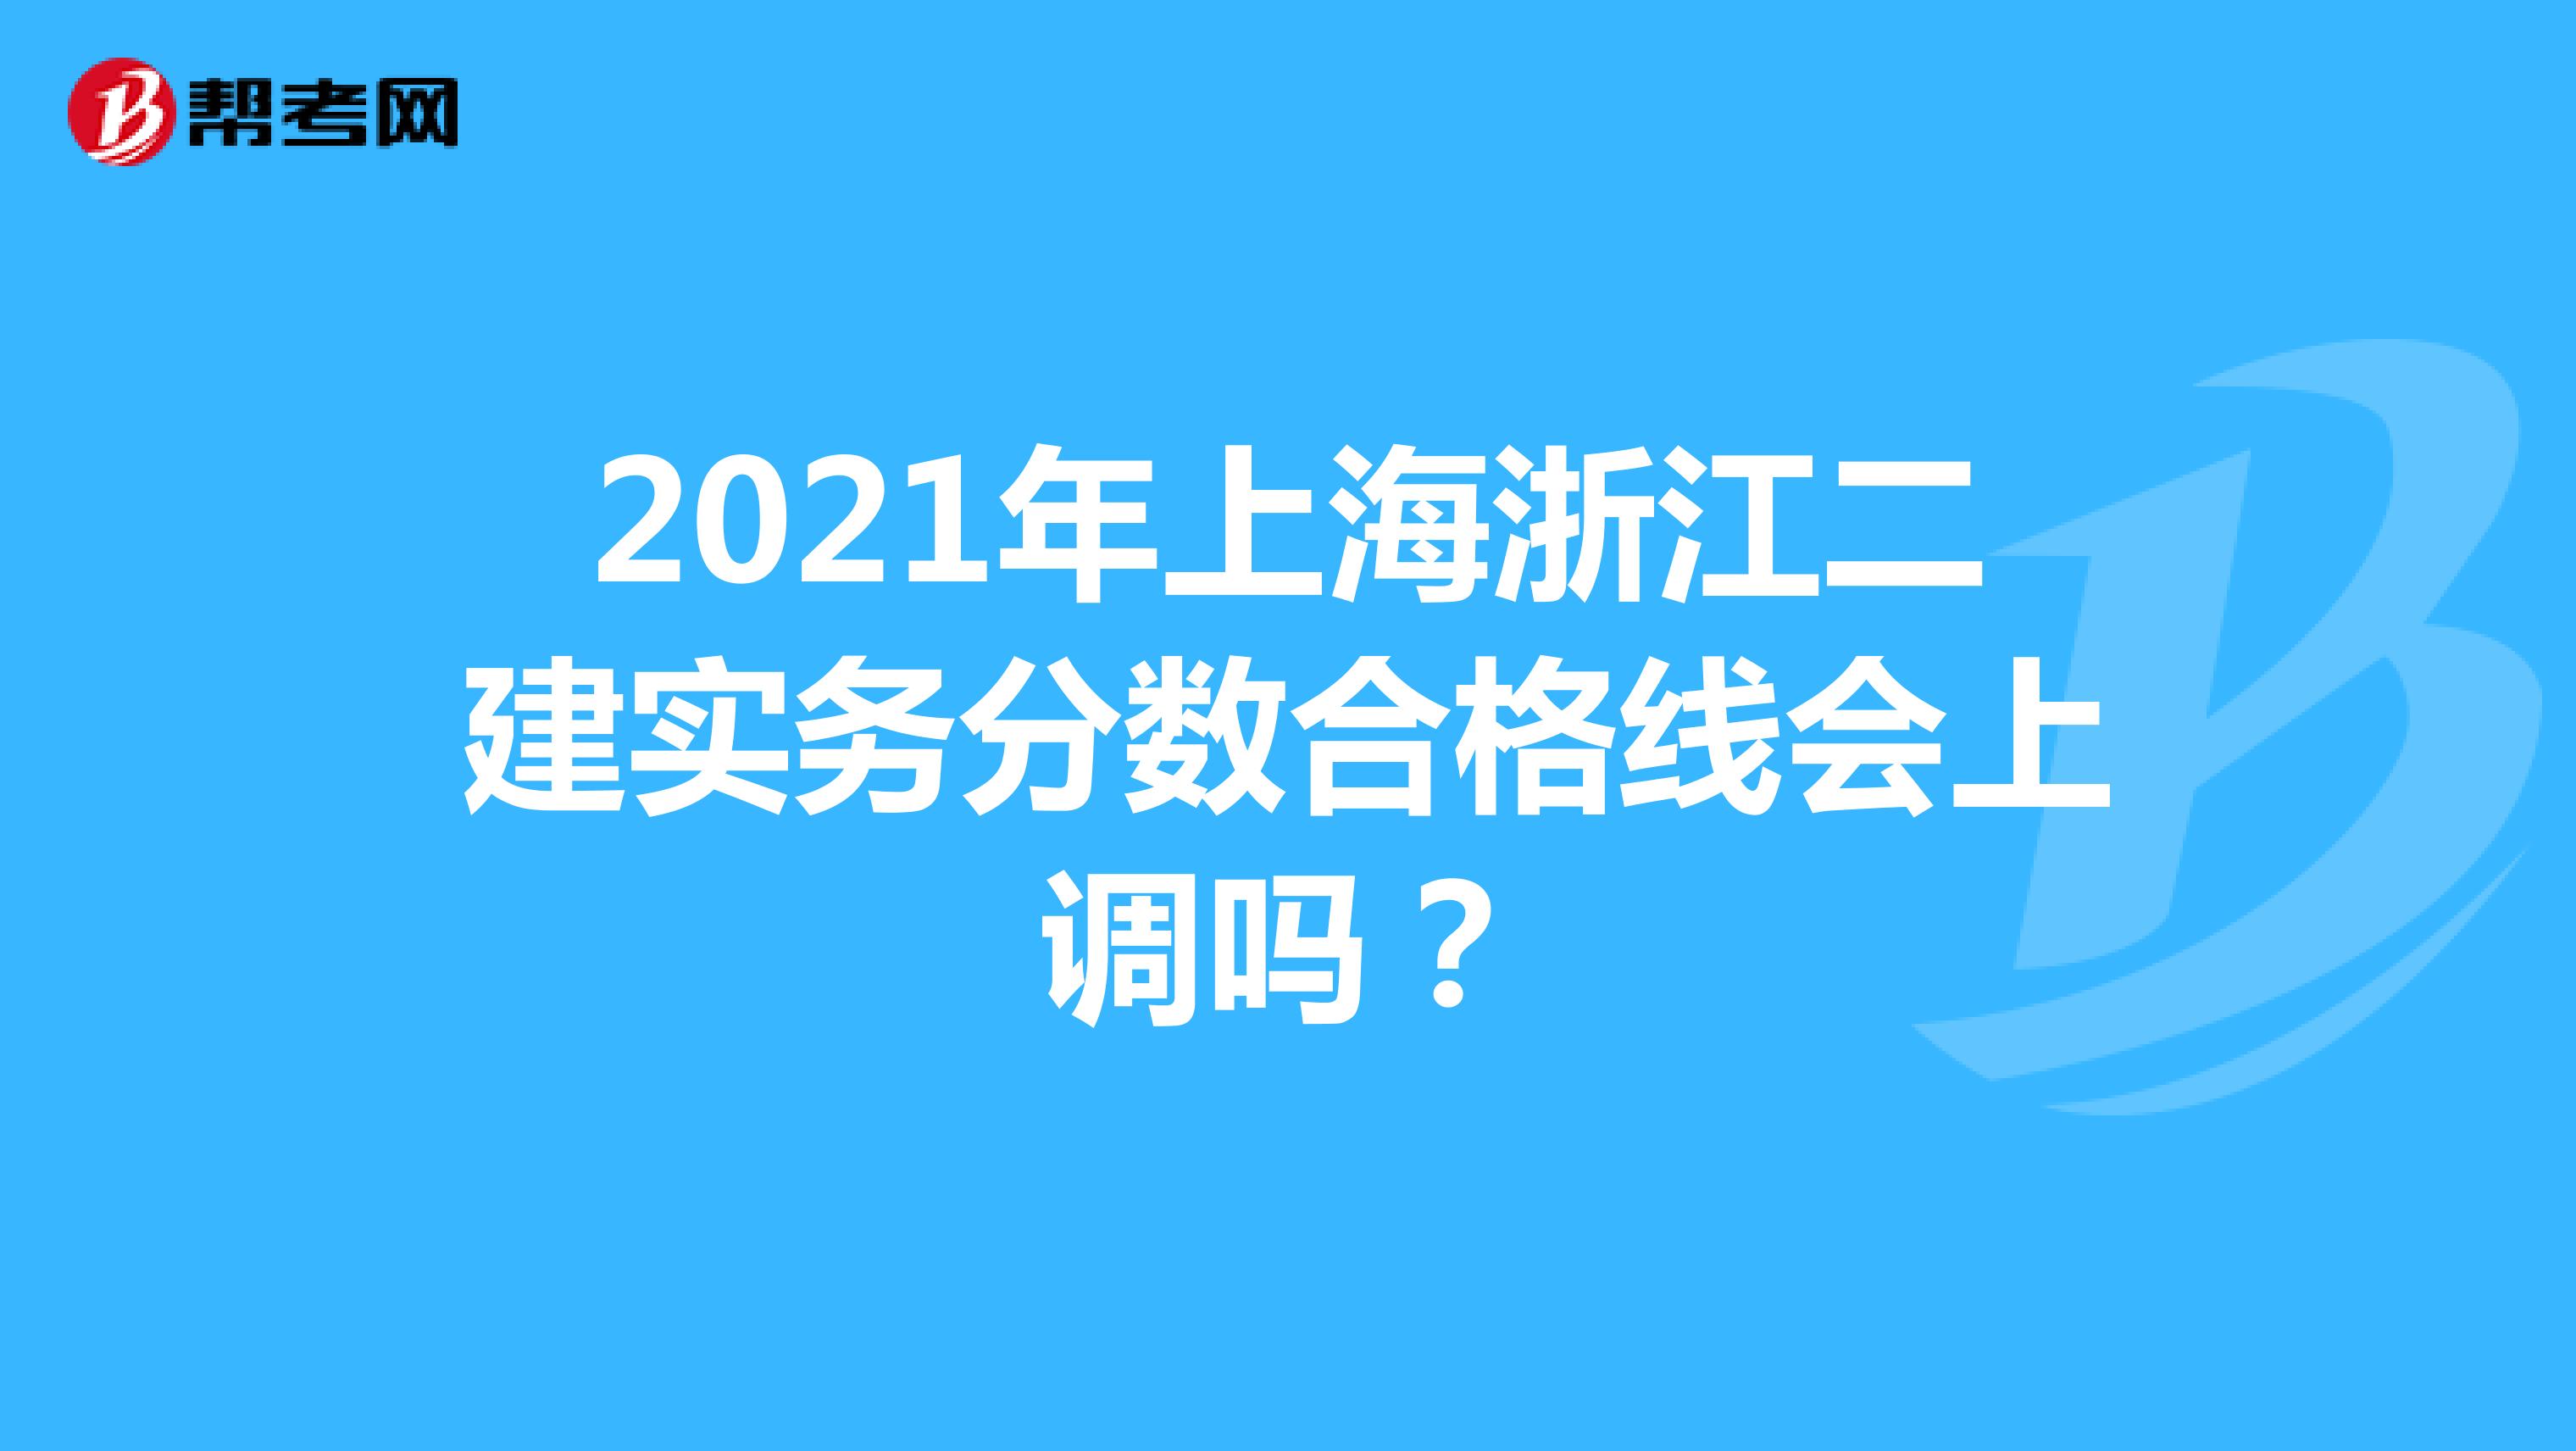 2021年上海浙江二建实务分数合格线会上调吗？